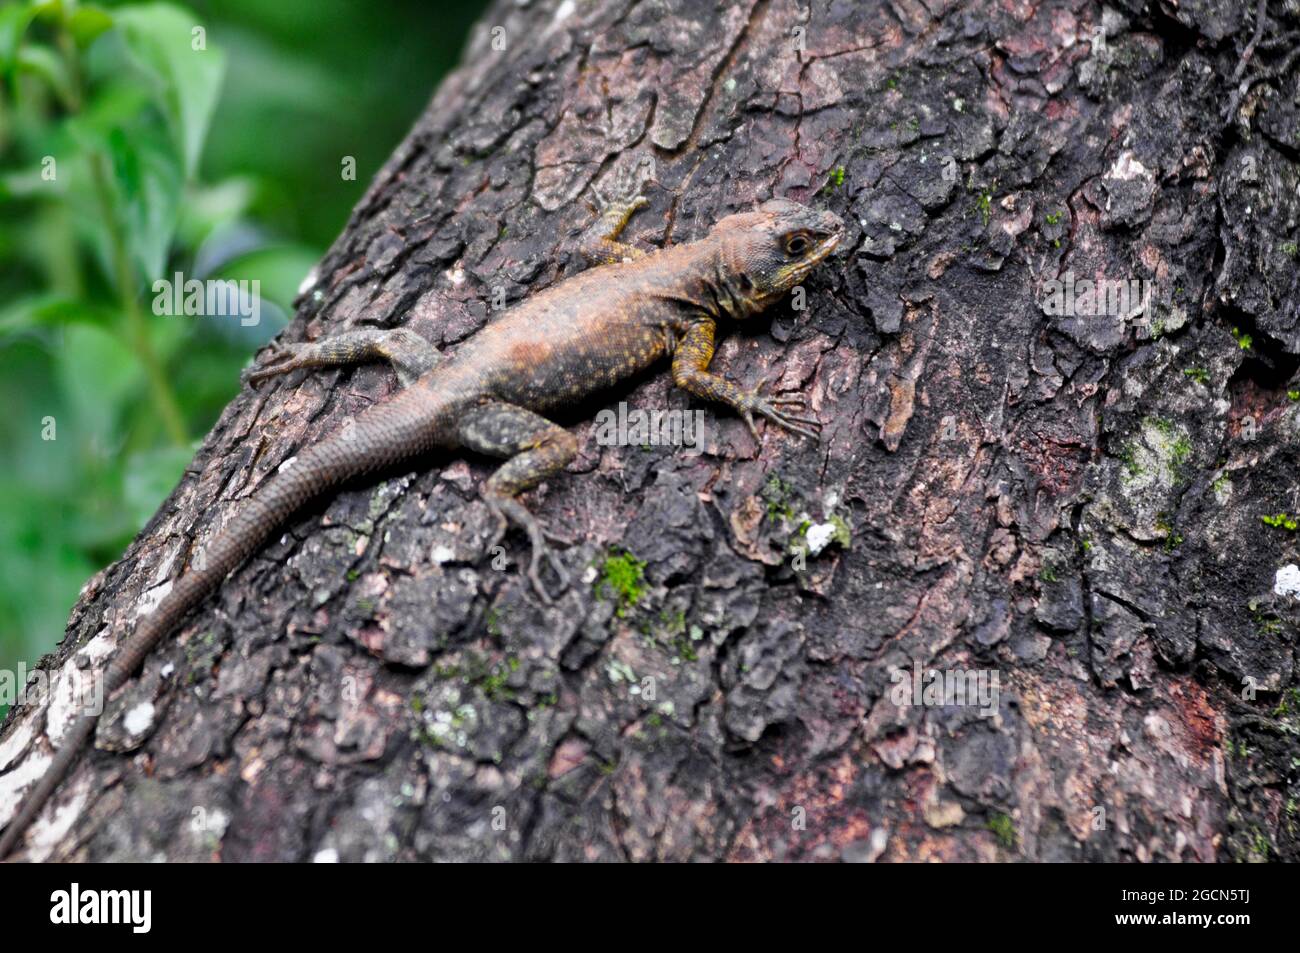 South American lizard (liolaemus lemniscatus). Iguazu National Park, Misiones, Argentina Stock Photo